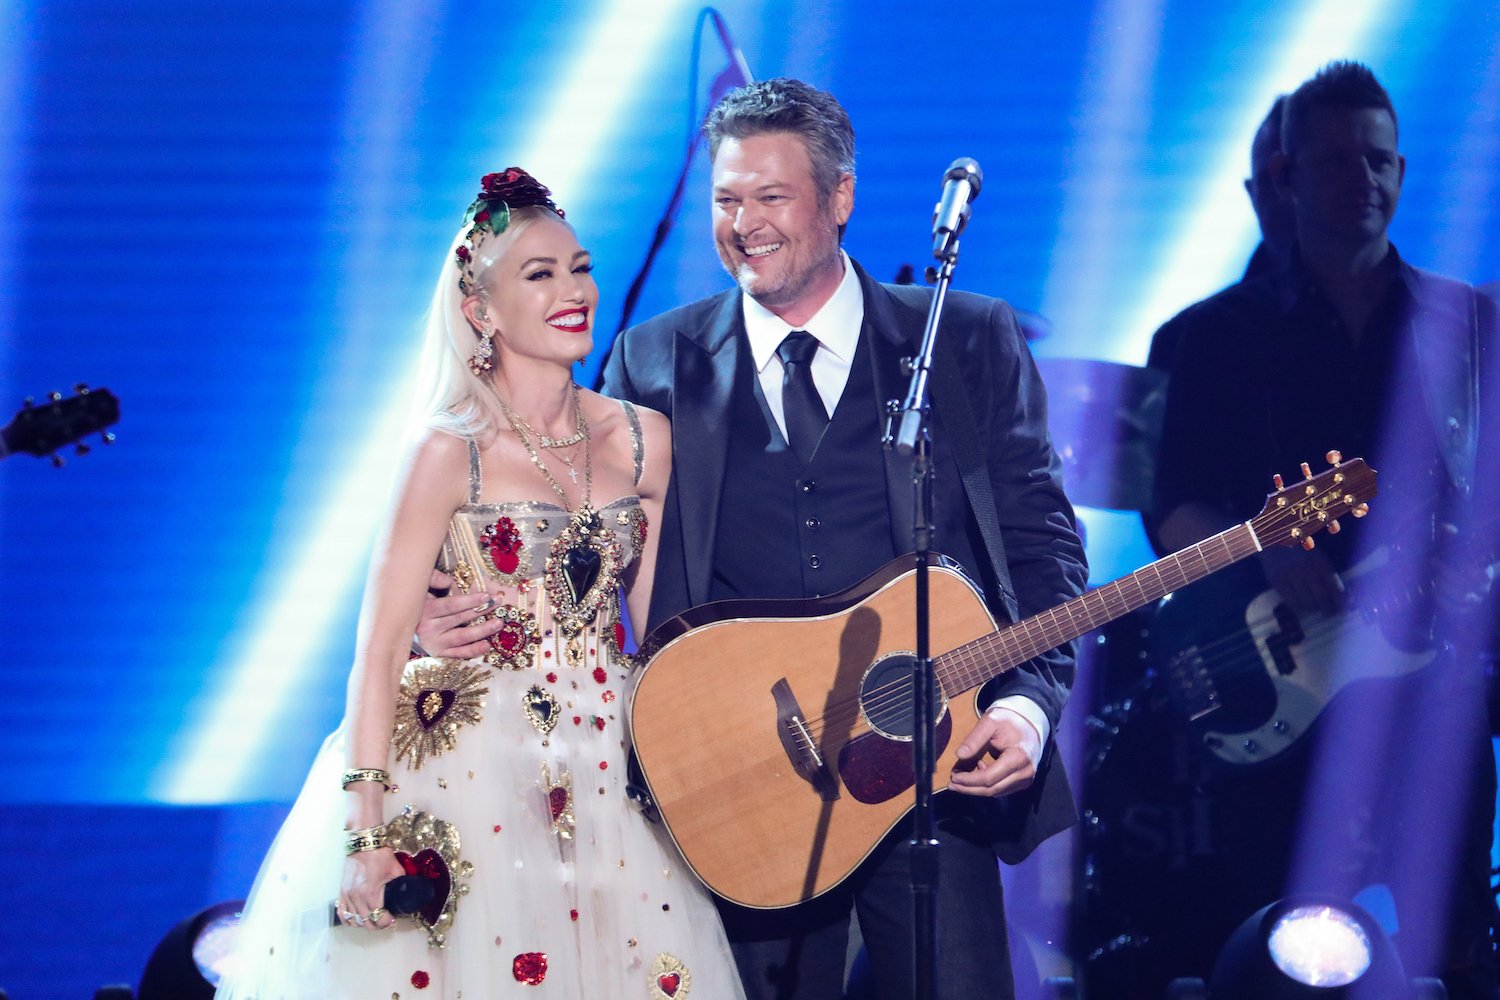 Gwen Stefani and Blake Shelton embracing,smiling on stage